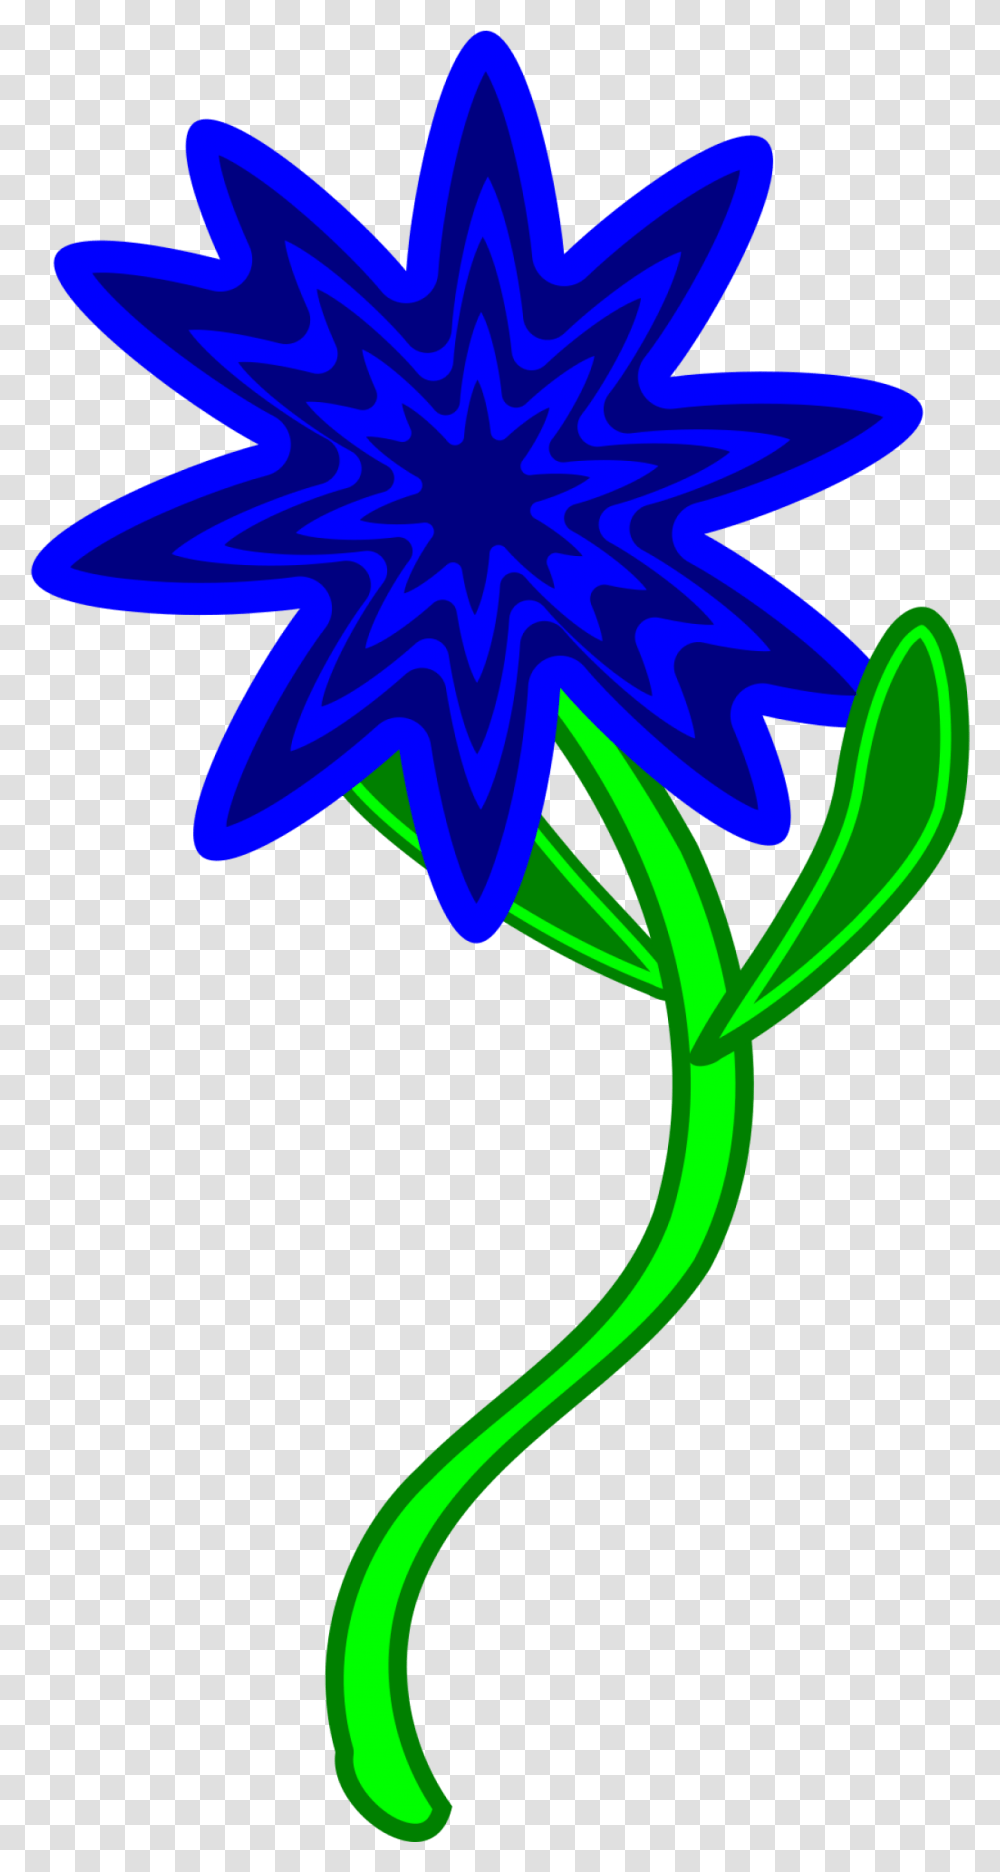 Blue Flower Clip Arts For Web Corte Silhouette Cameo Molde De Flores Para Silhouette, Graphics, Plant, Light, Purple Transparent Png